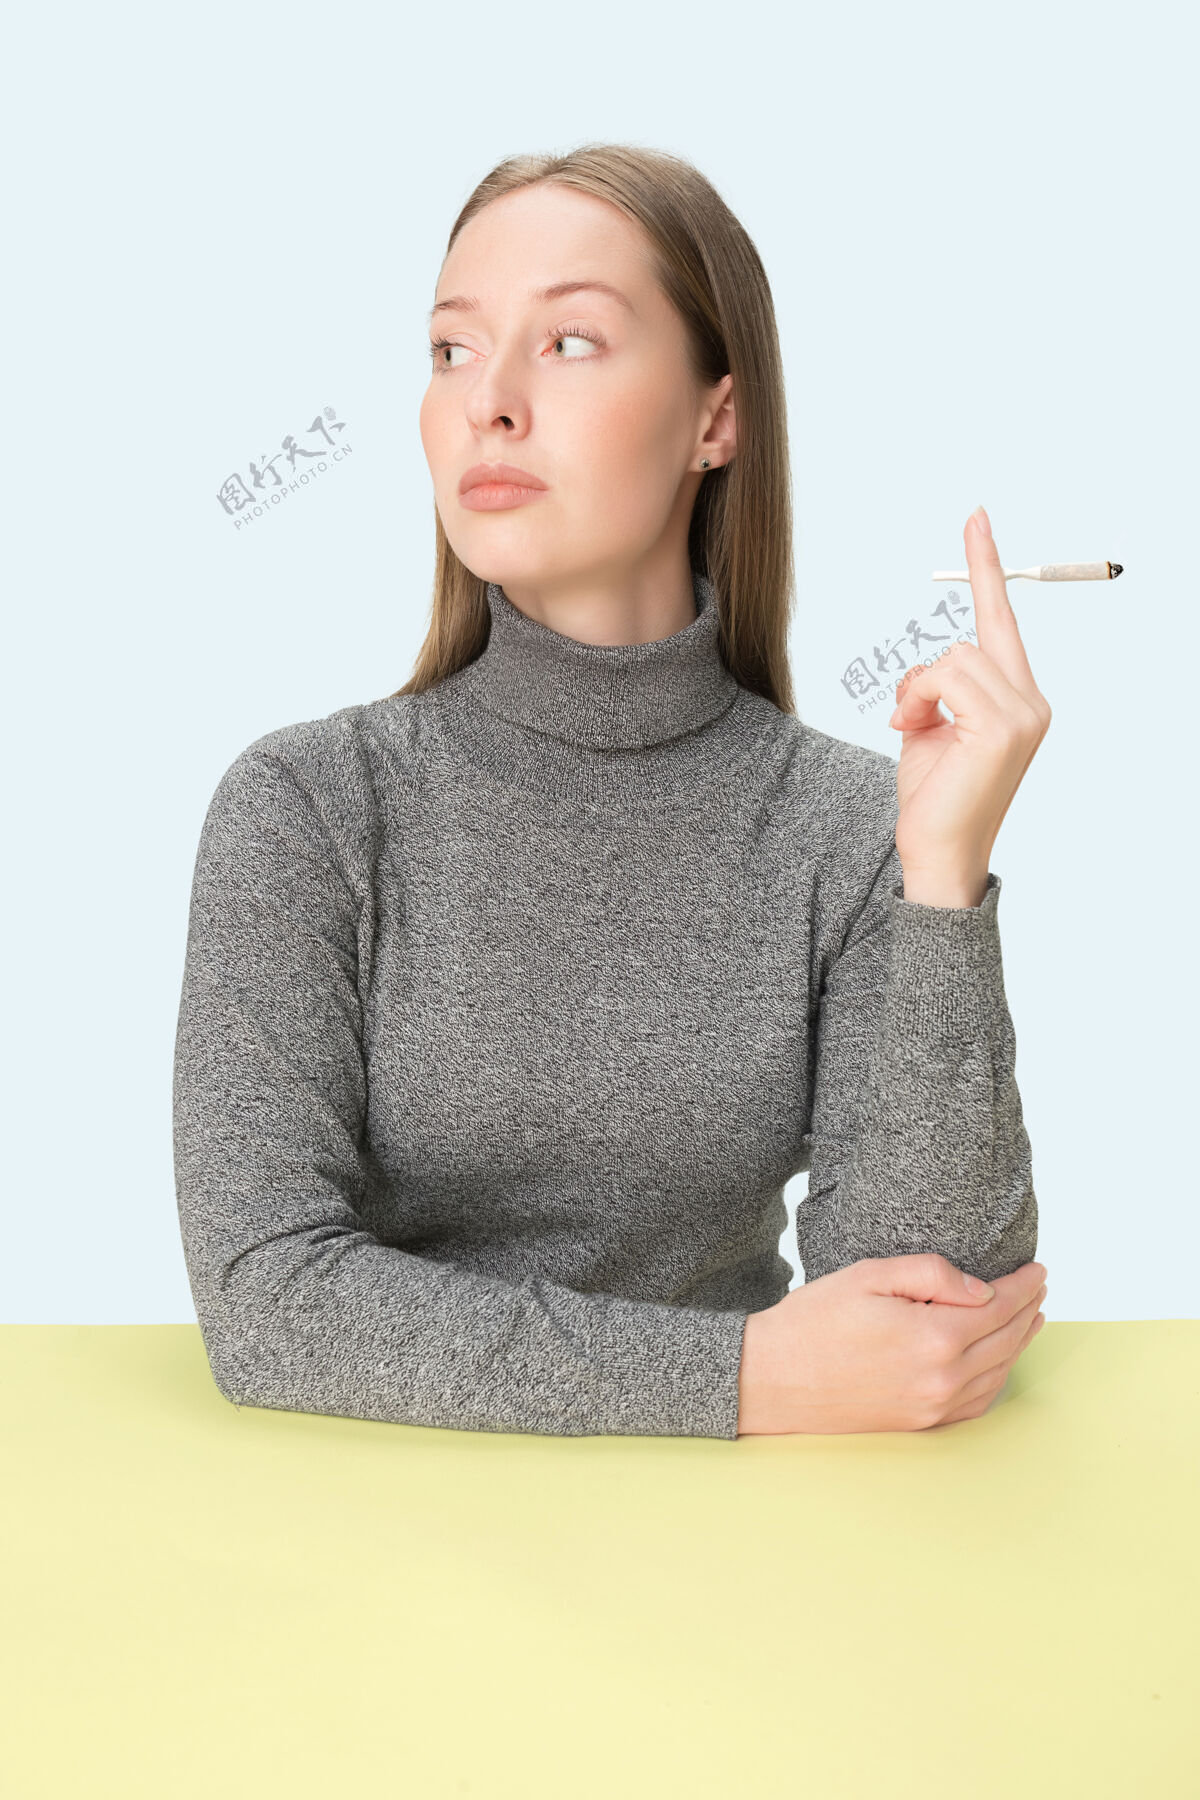 香烟那个坐在演播室桌子旁抽烟的年轻女人吸烟室内烟草